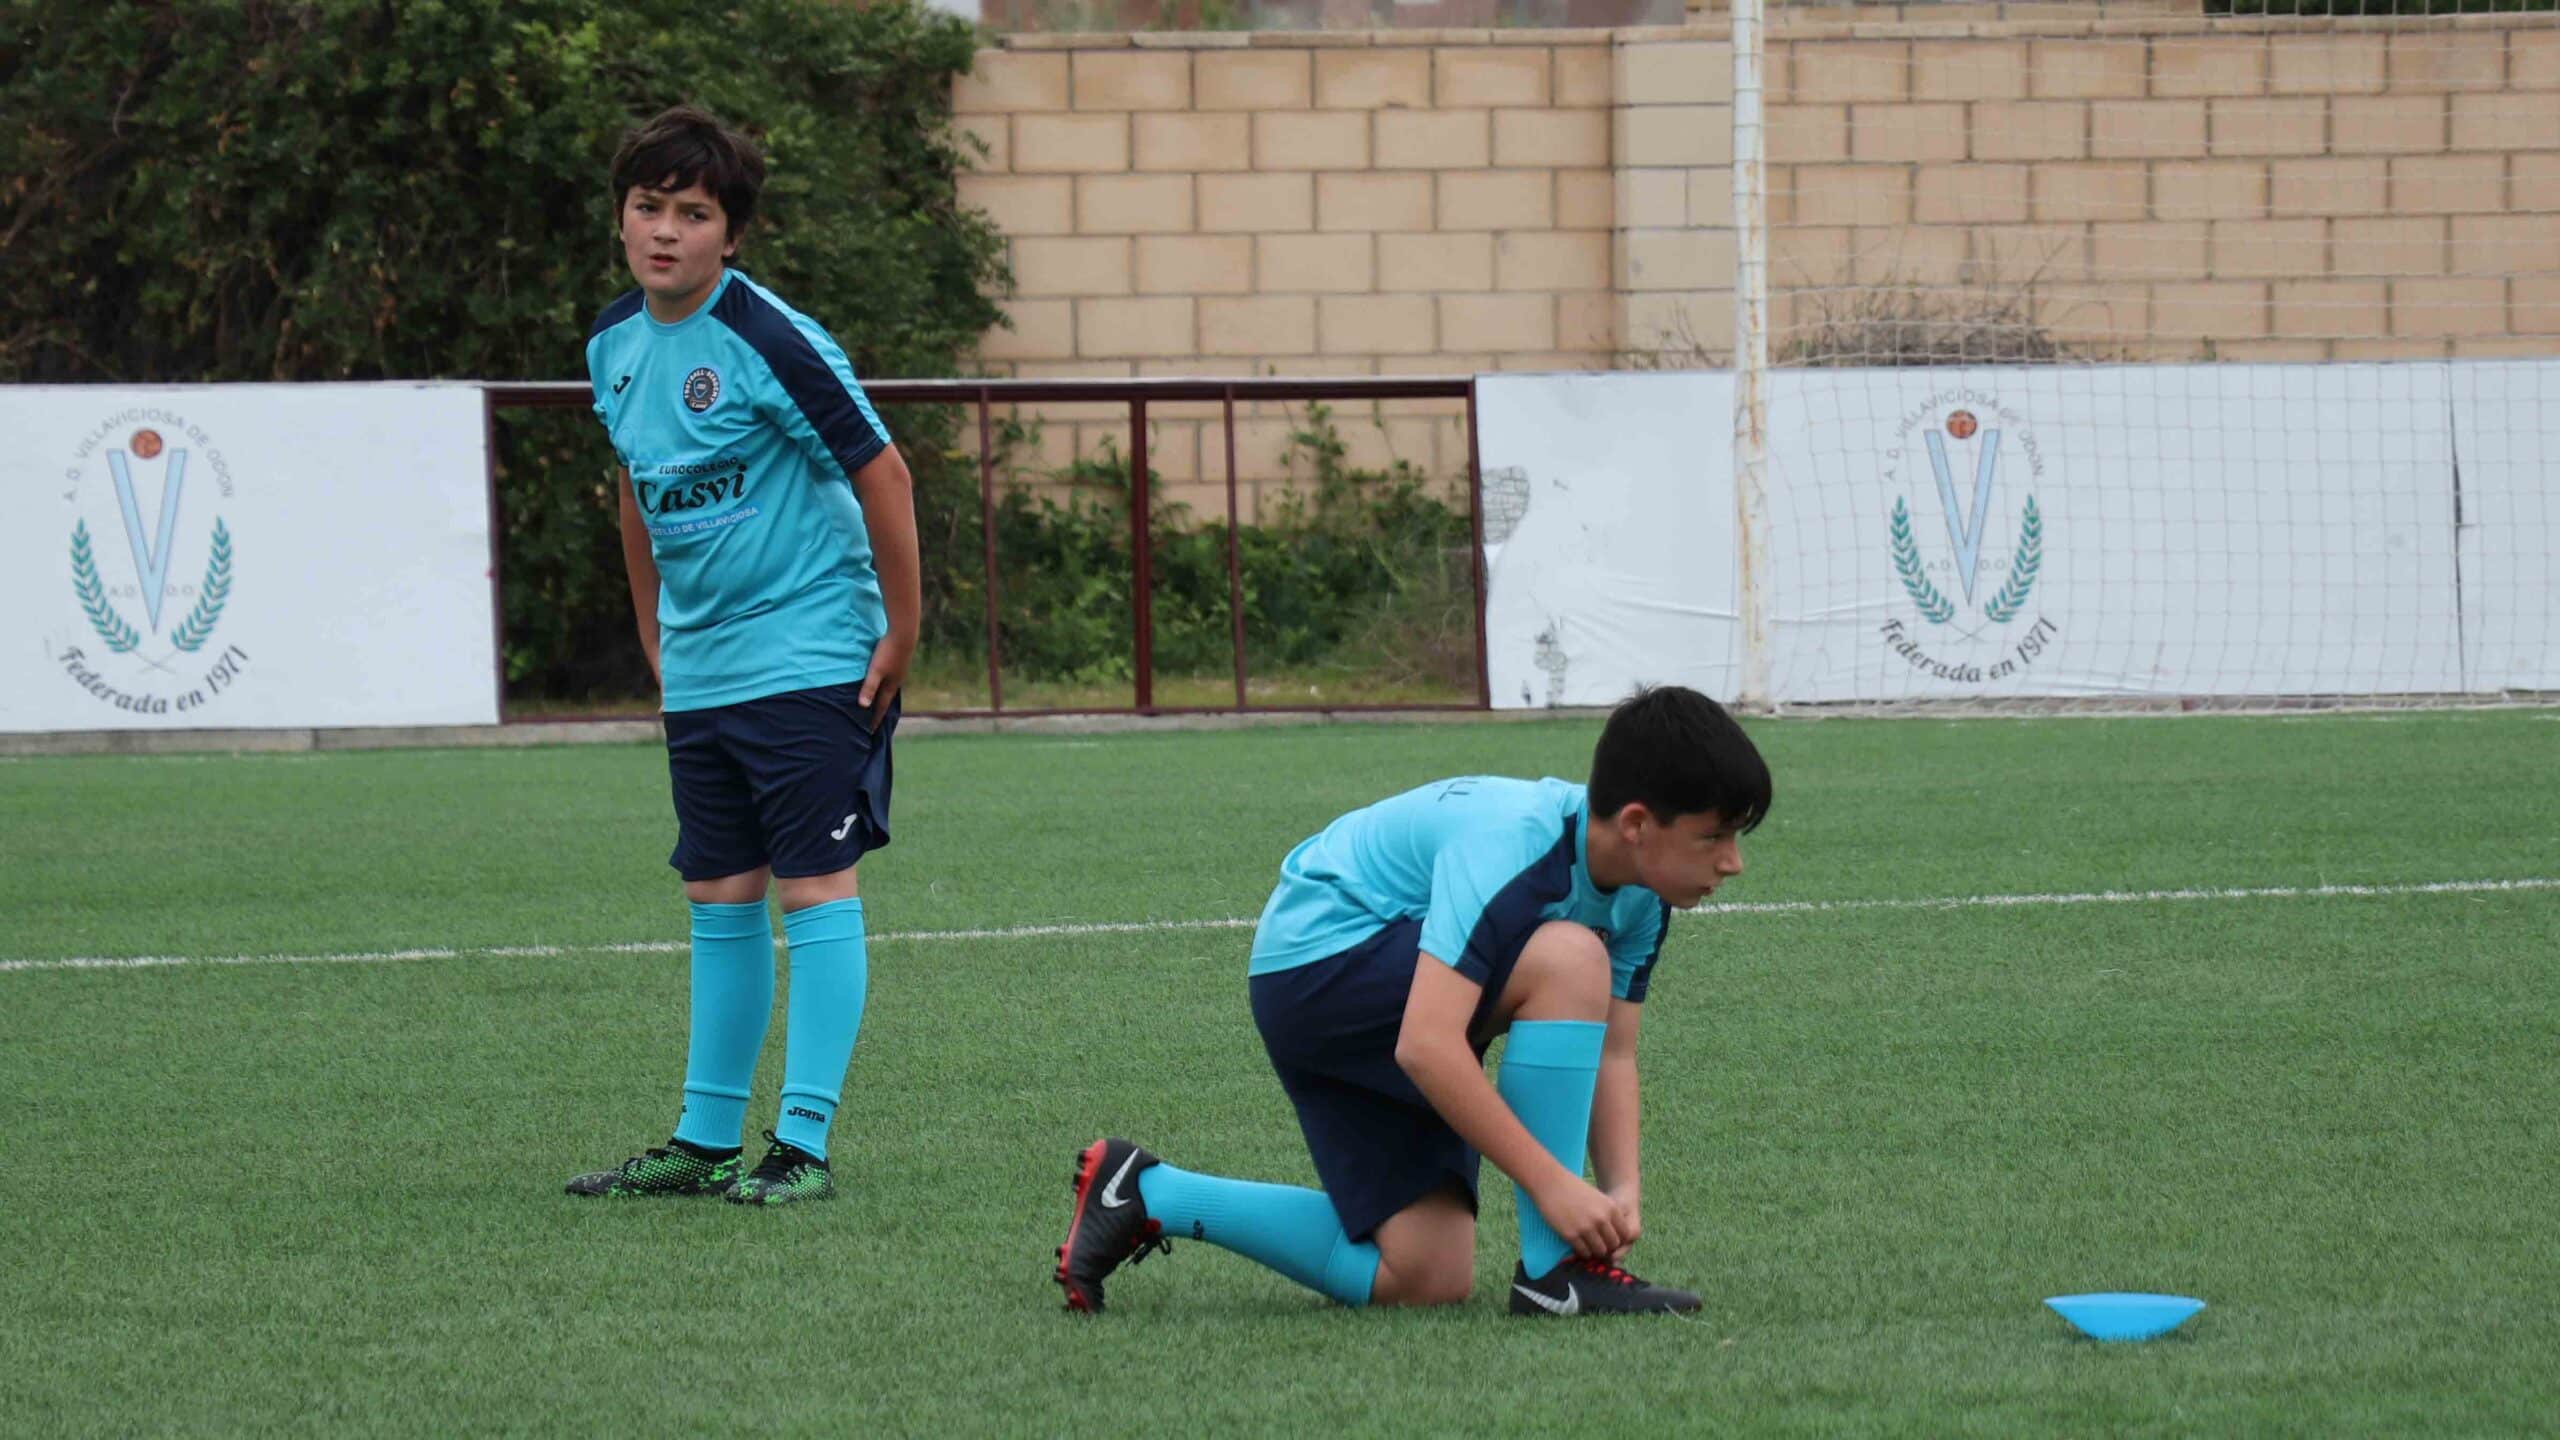 Beneficios fundamentales de inscribirse en Casvi Football Academy